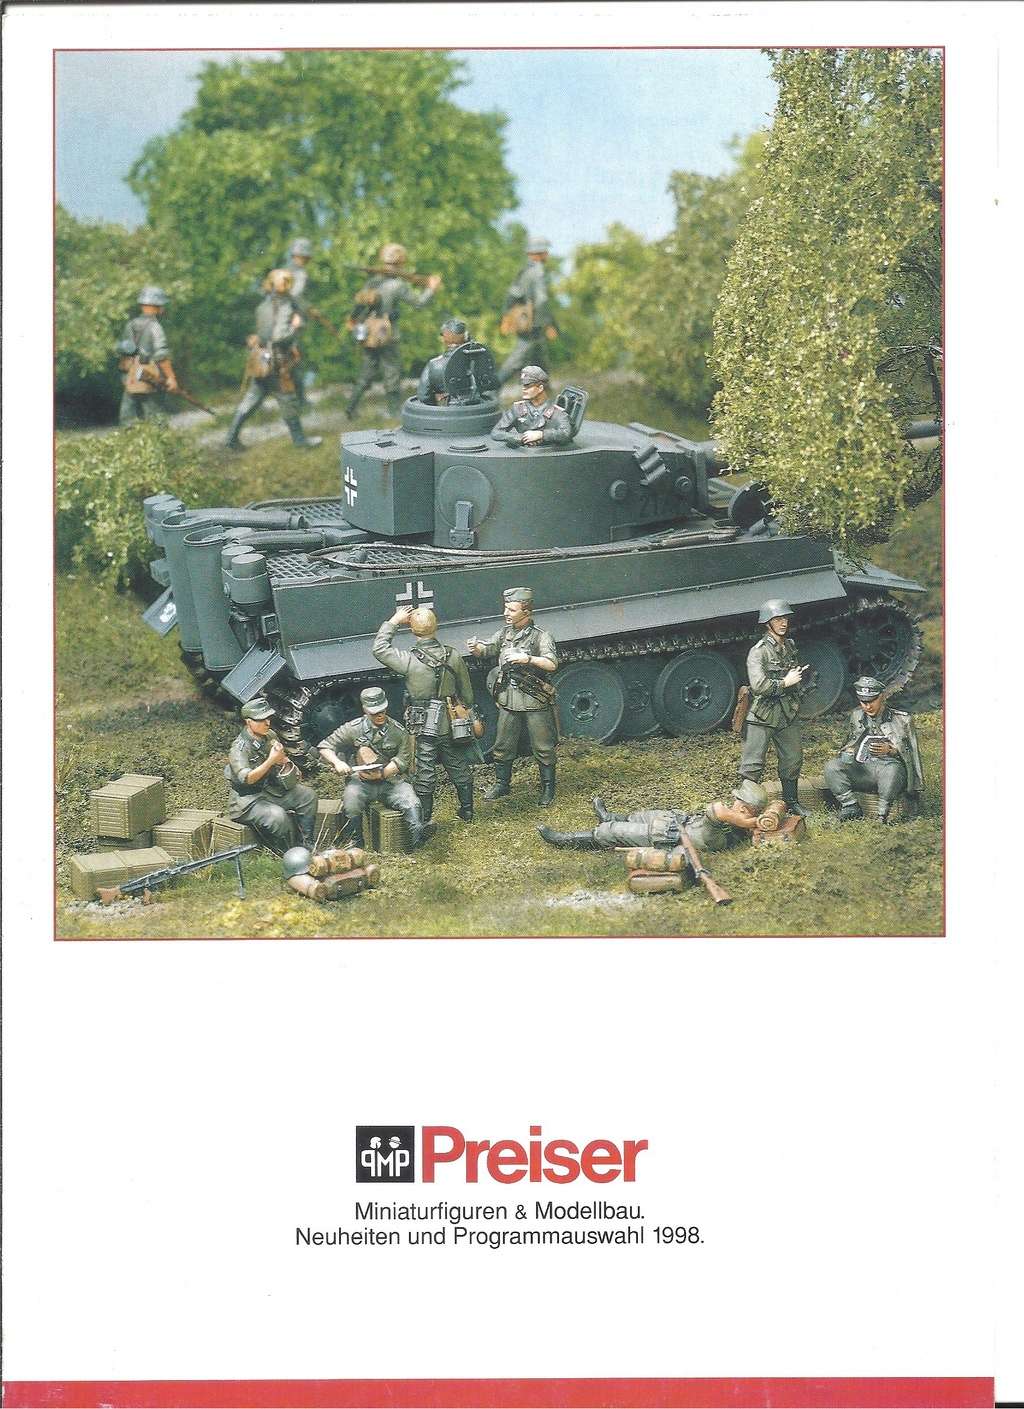 preiser - [PREISER 1998] Catalogue militaire 1998 Preis236